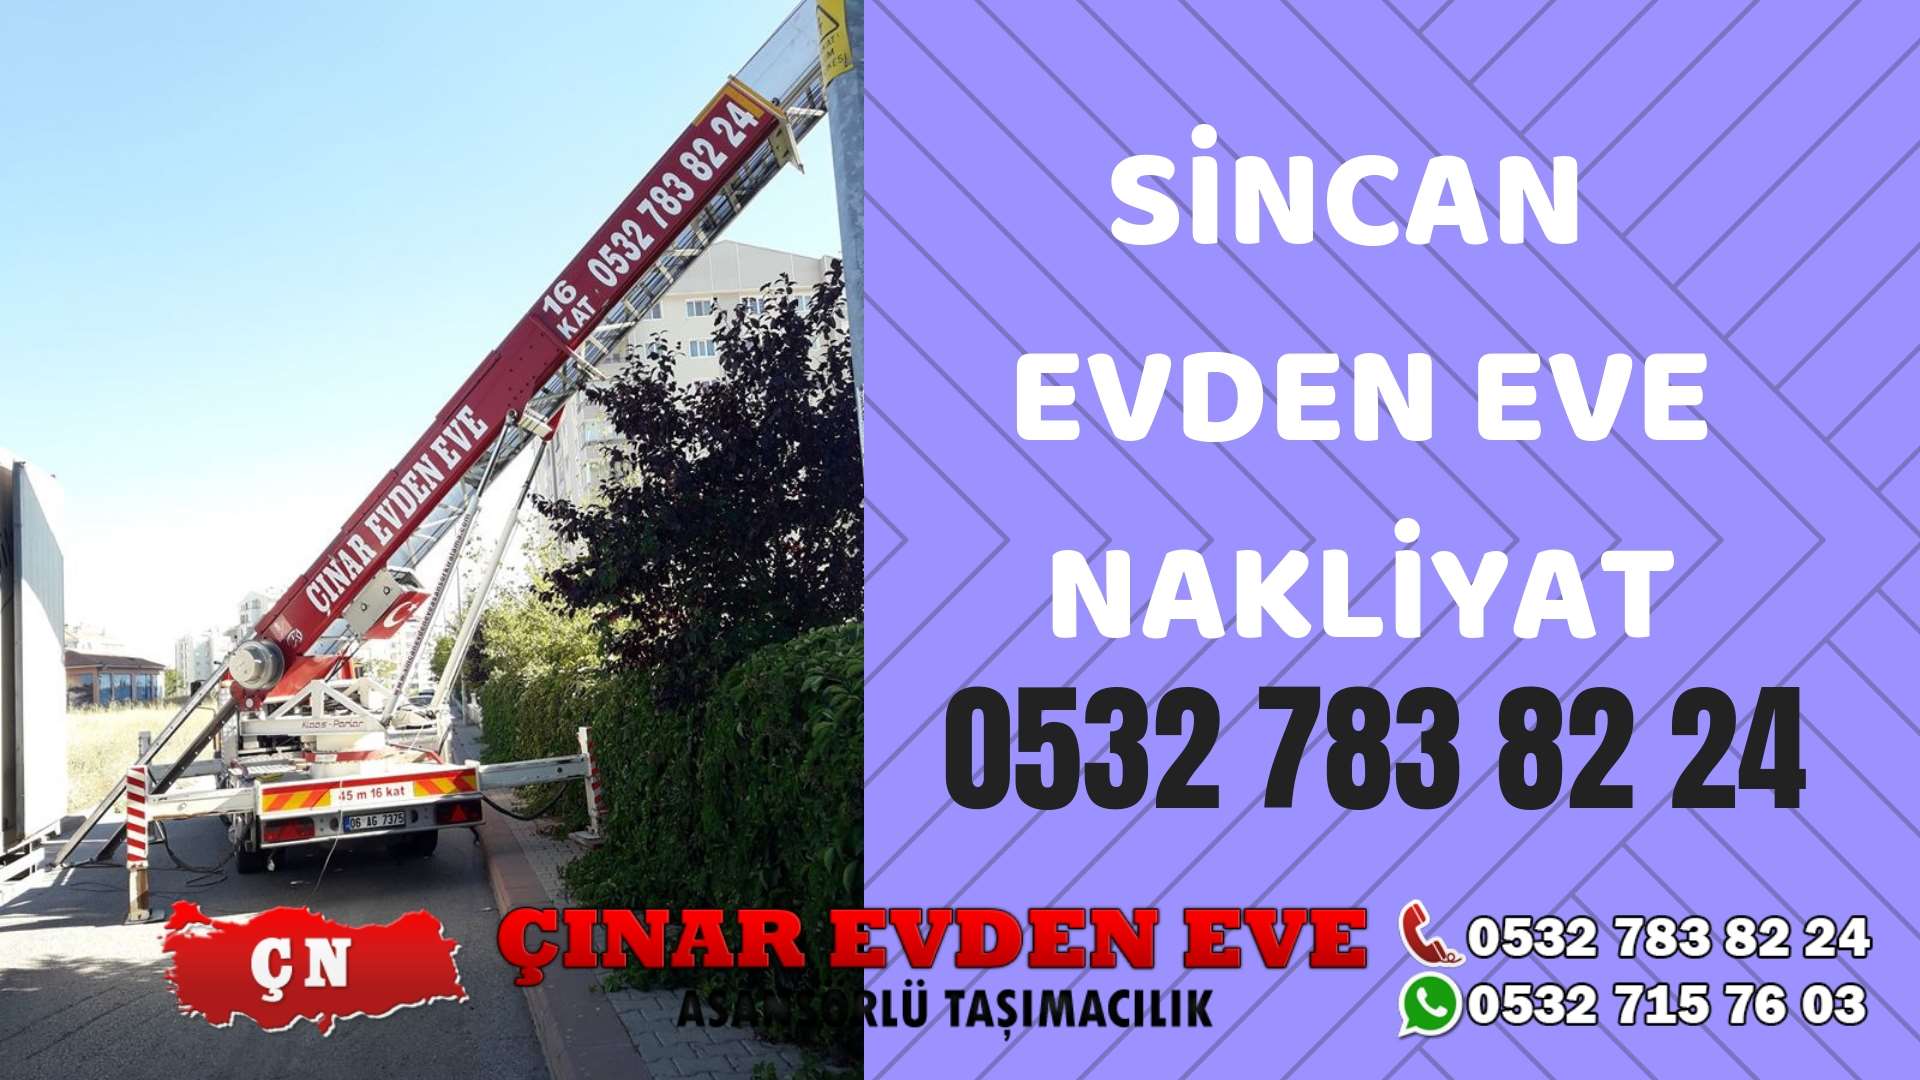 Ankara Kazan Sincan evden eve asansörlü nakliyat en ucuz nakliye 0532 715 76 03